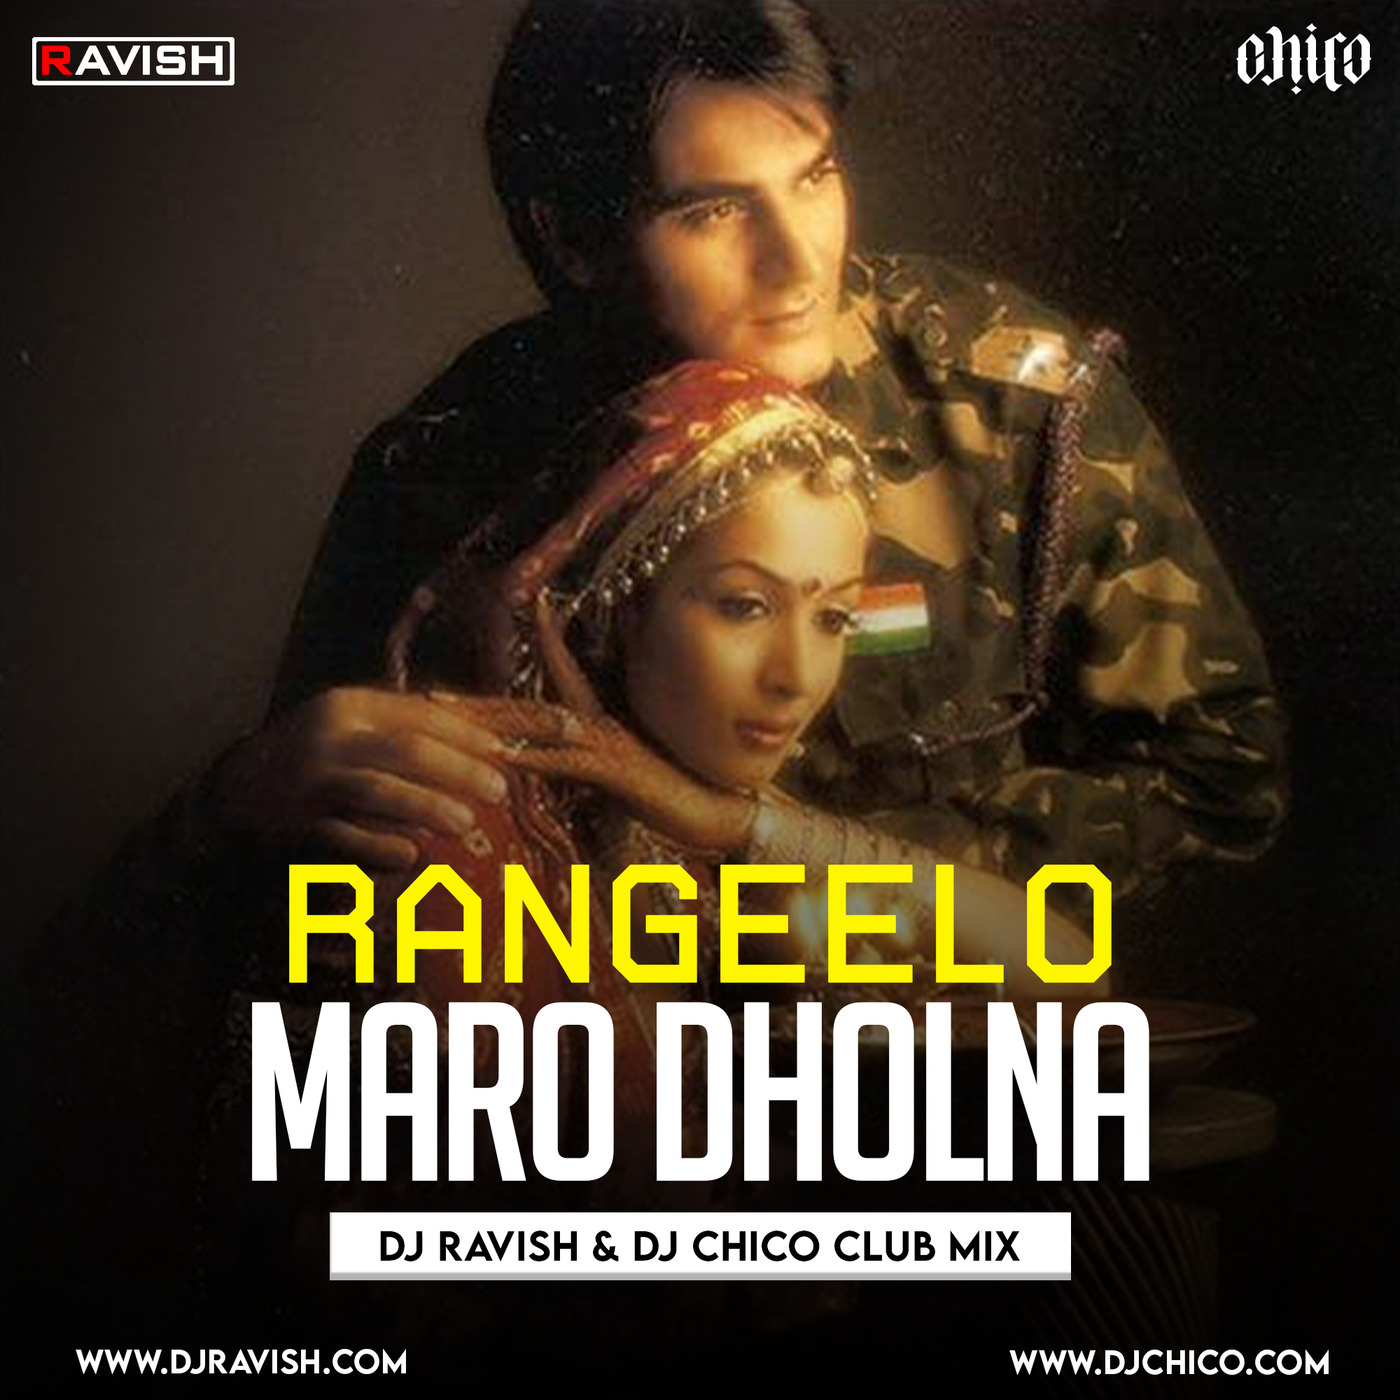 Shubha Mudgal - Rangilo Maro Dholna (DJ Ravish & DJ Chico Club Mix)